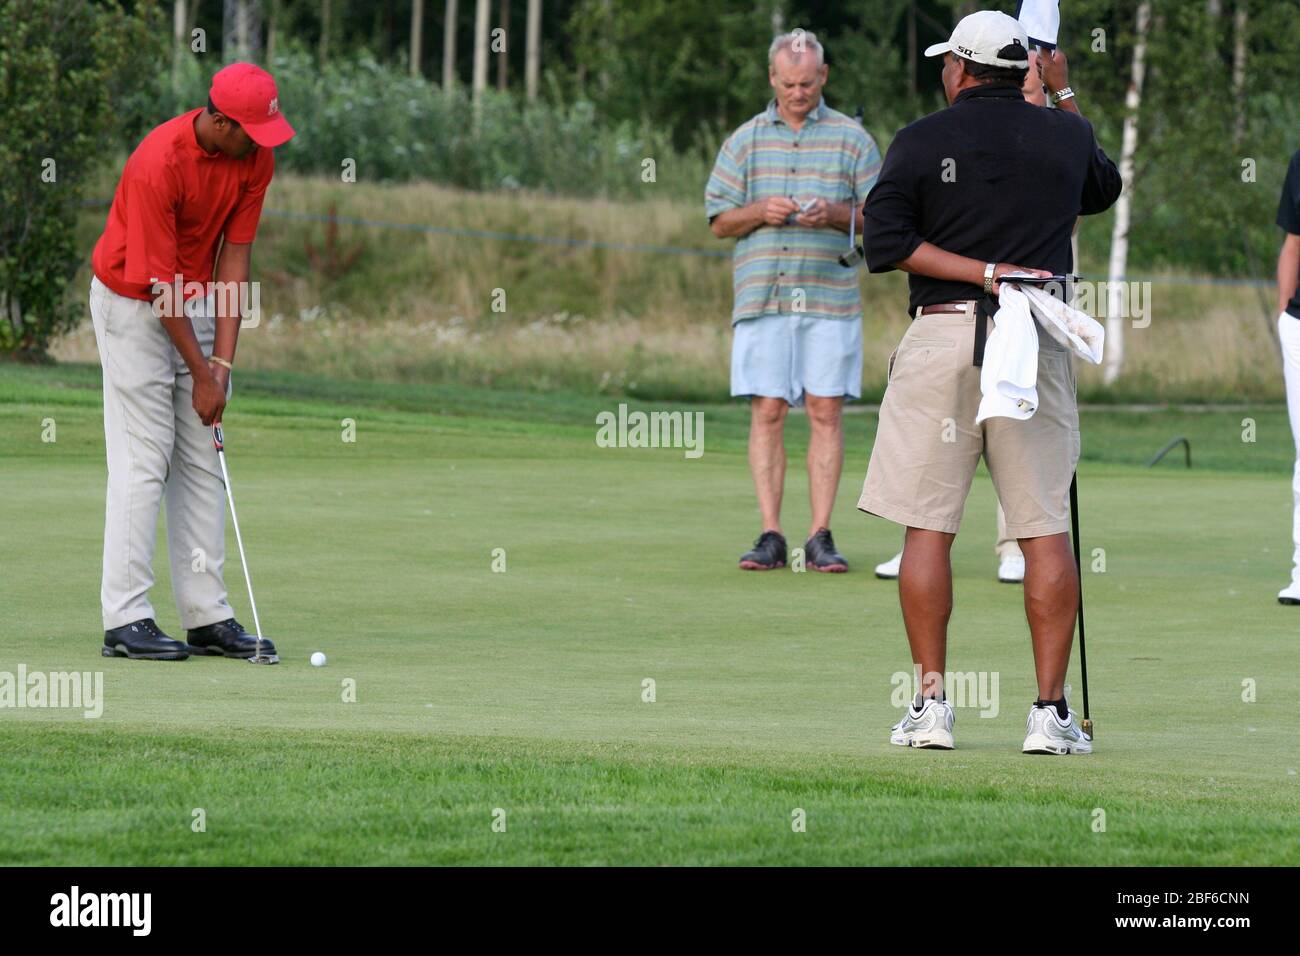 Bill Murray et Tony Finau jouant au golf à a ProAm en Suède. Stockholm / Suède, Arlangastad, parcours de golf, août 2007. Banque D'Images